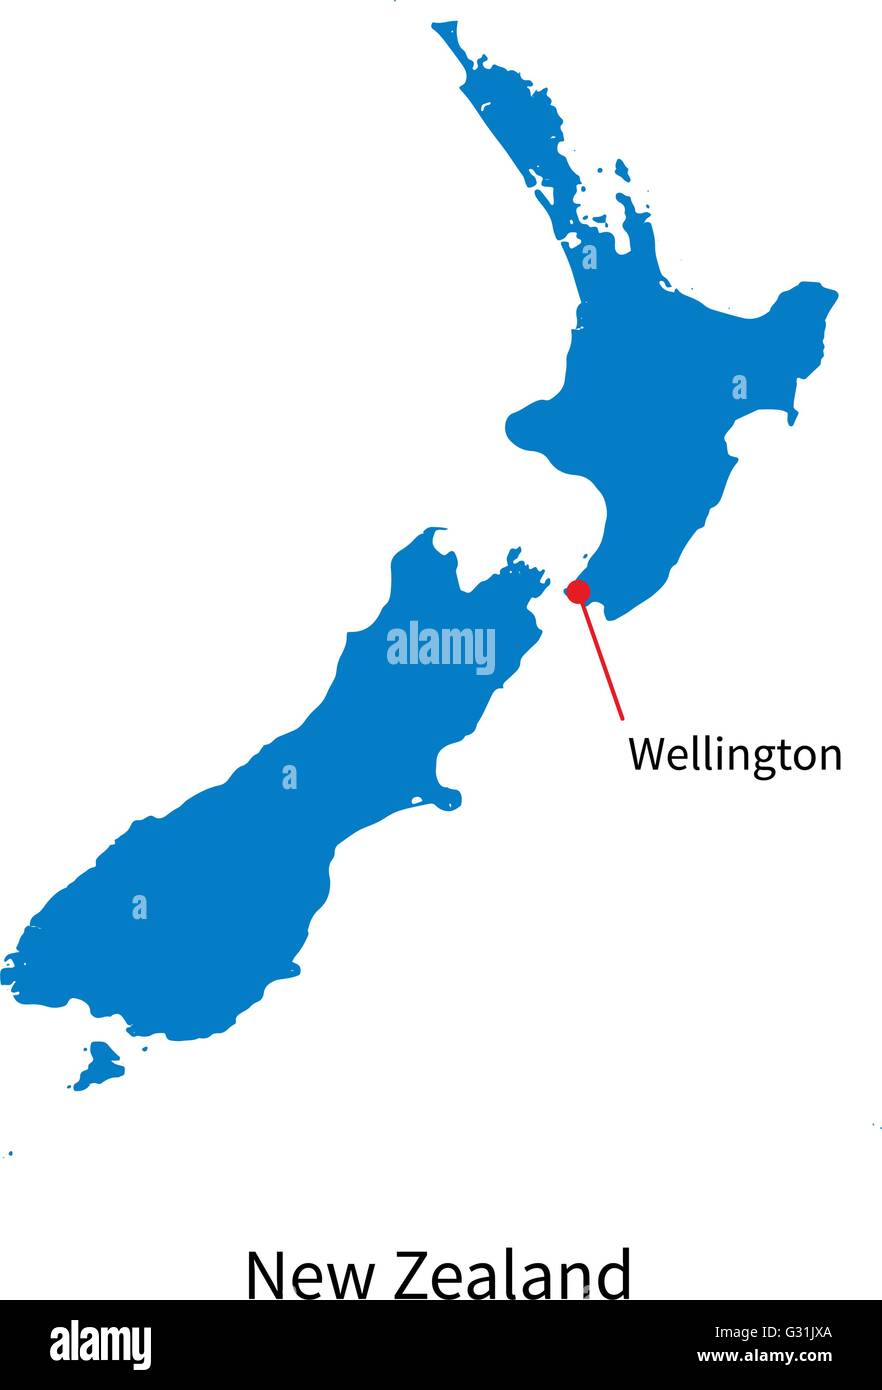 Detaillierten Vektorkarte von Neuseeland und der Hauptstadt Wellington Stock Vektor